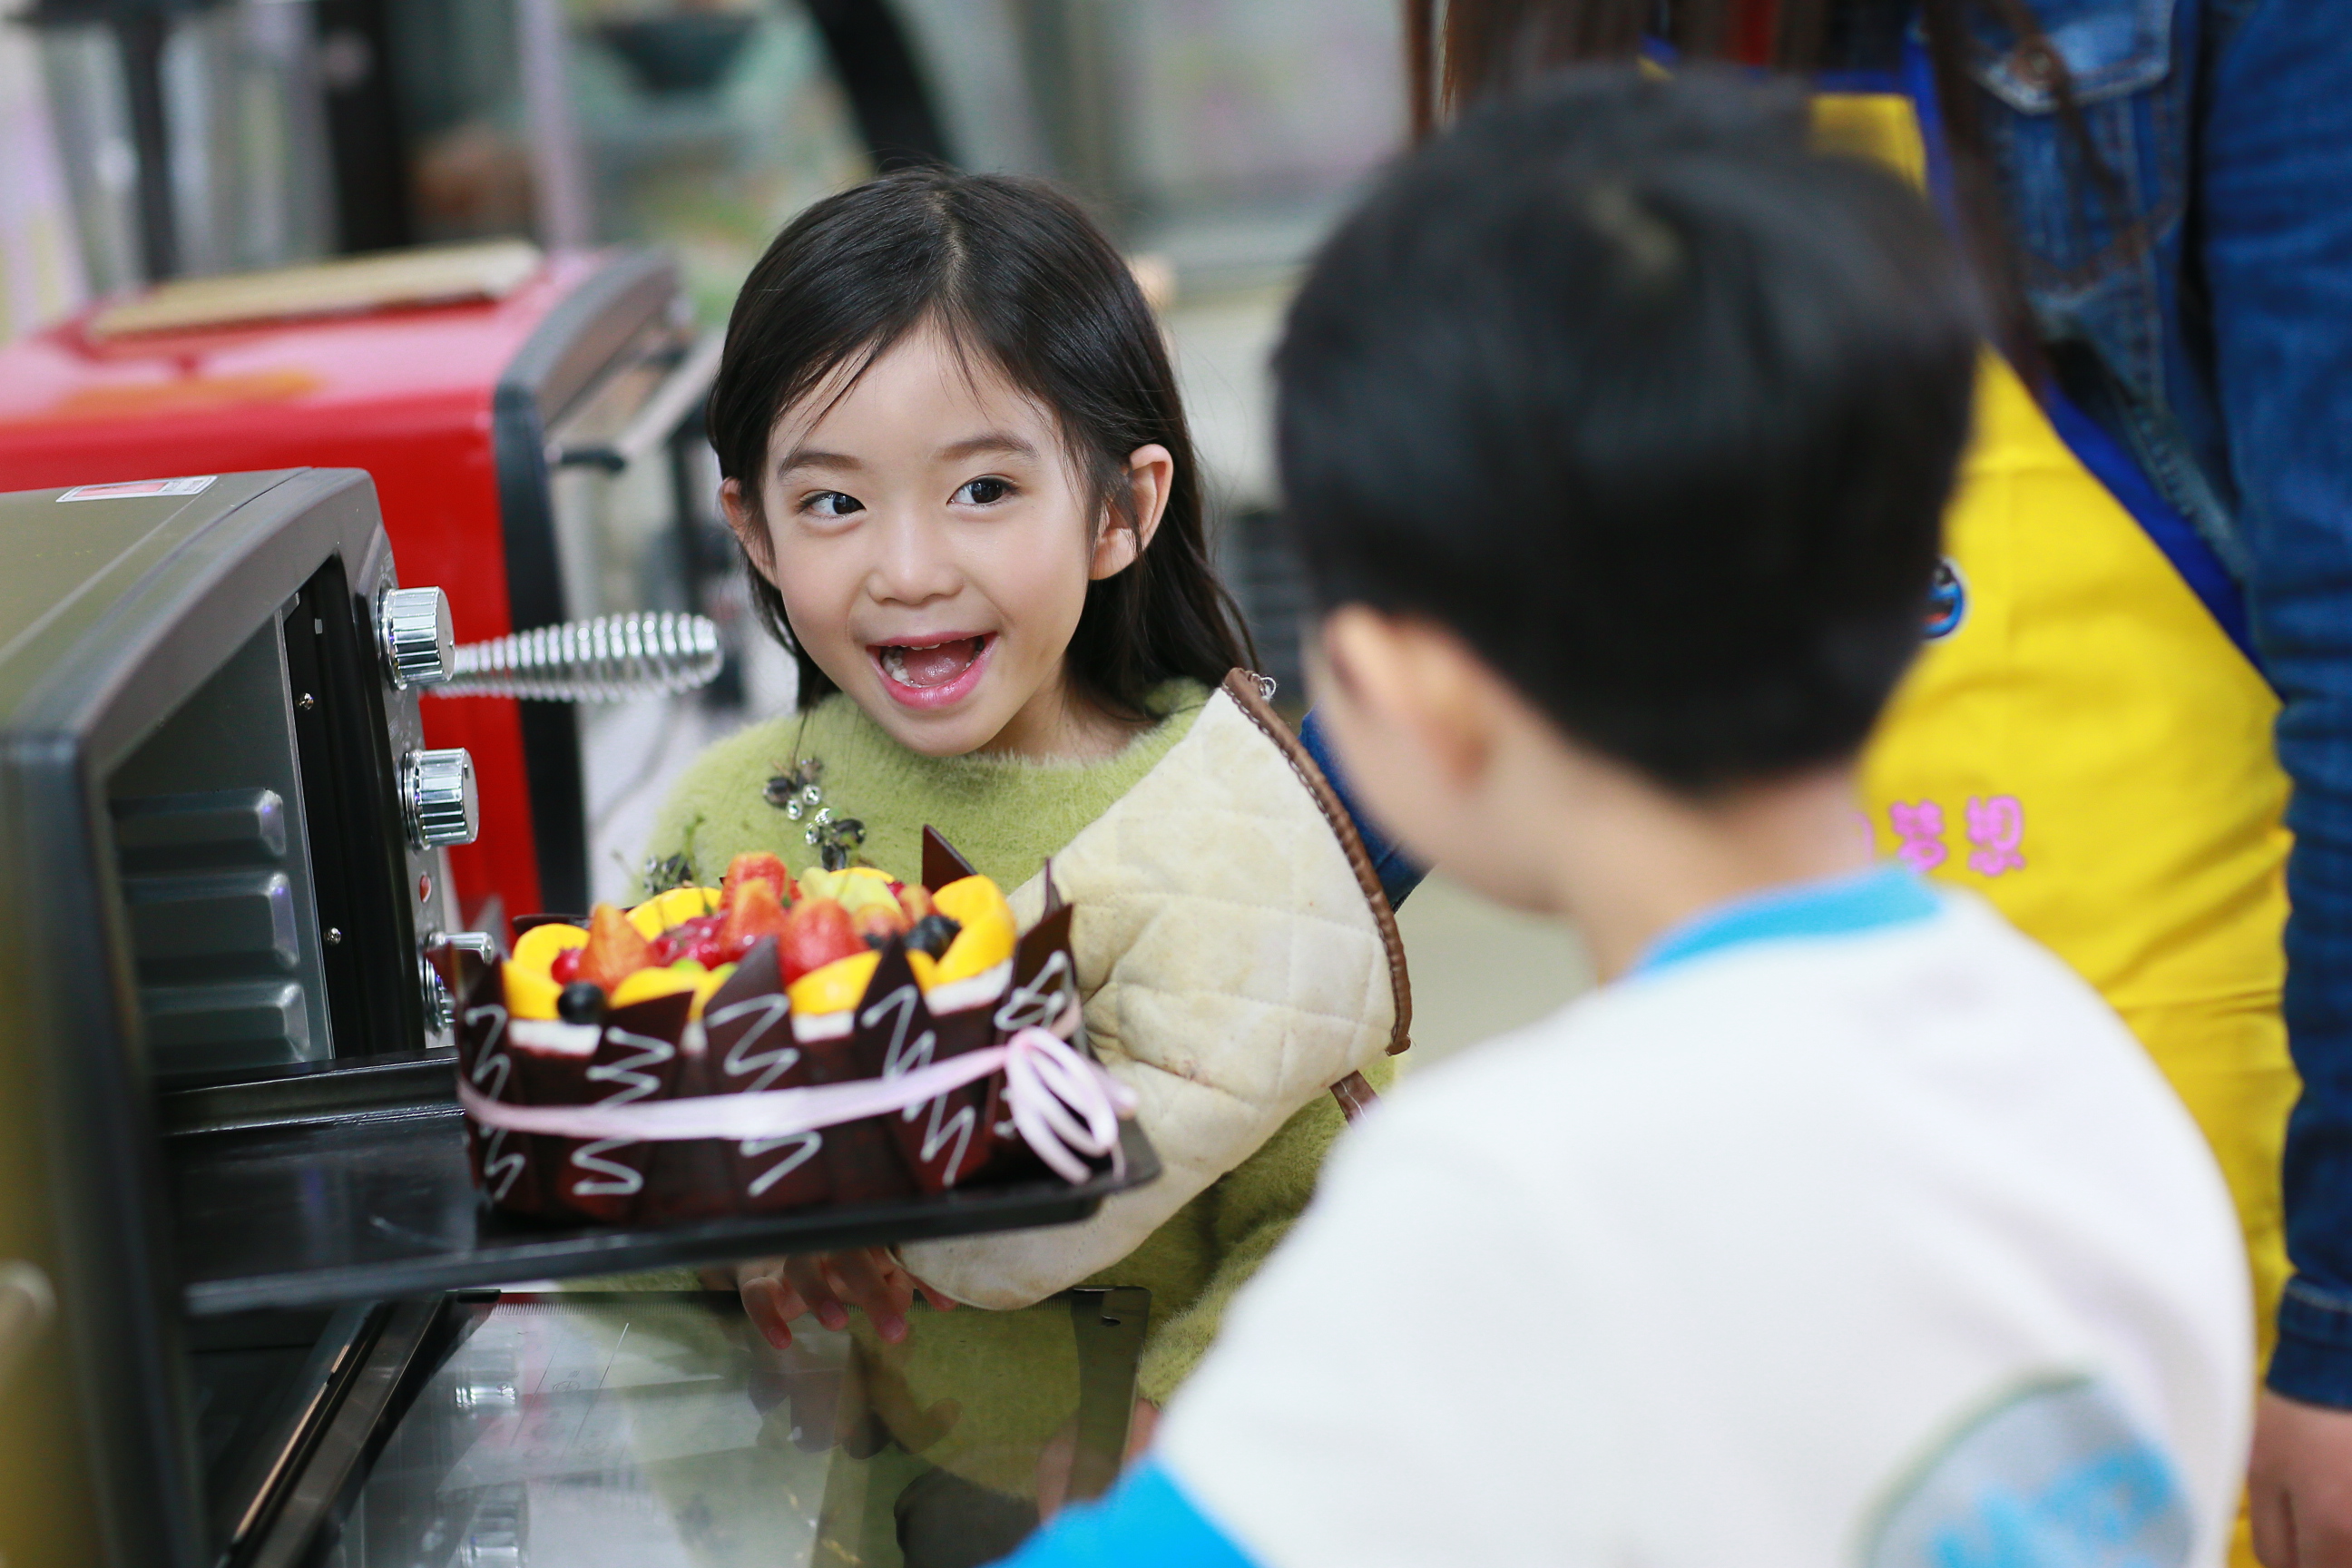 广州加盟一个儿童乐园多少钱